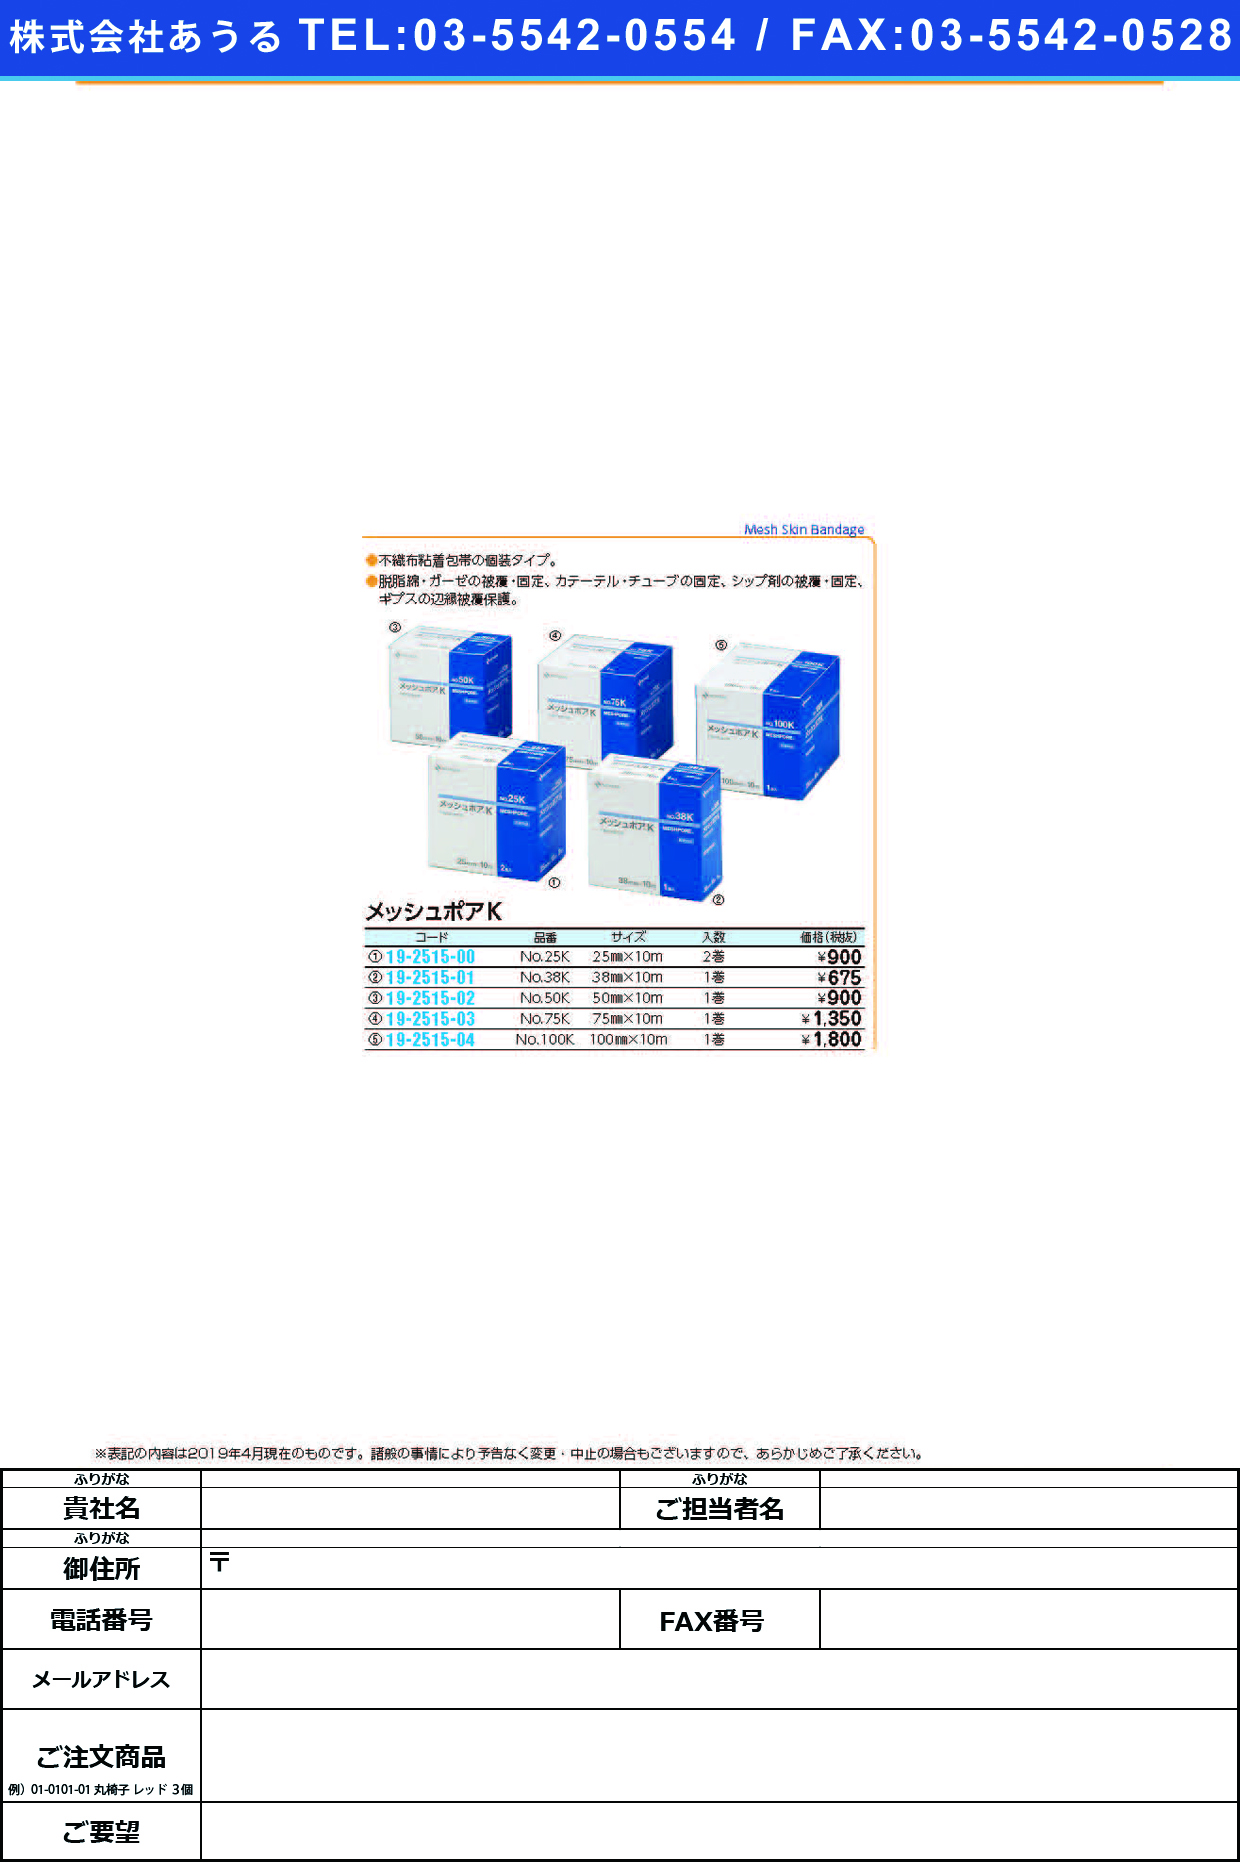 (19-2515-03)メッシュポアＫ NO.75K(75MMX10M) ﾒｯｼｭﾎﾟｱK(ニチバン)【1個単位】【2019年カタログ商品】